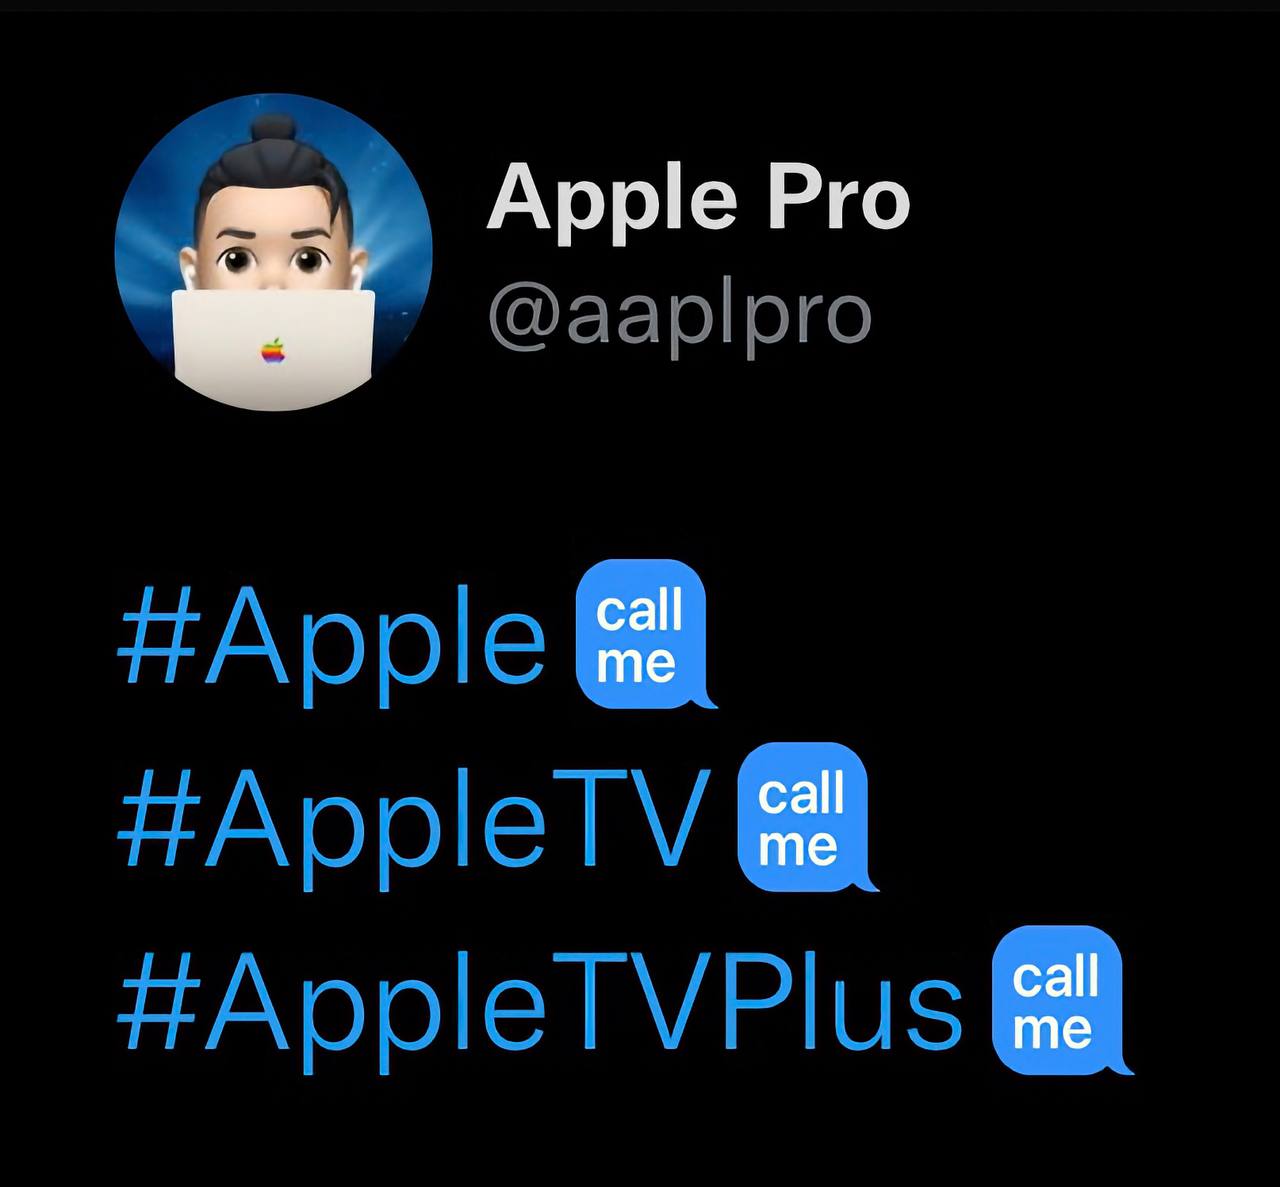 #Apple call me, говорят они в Твиттере